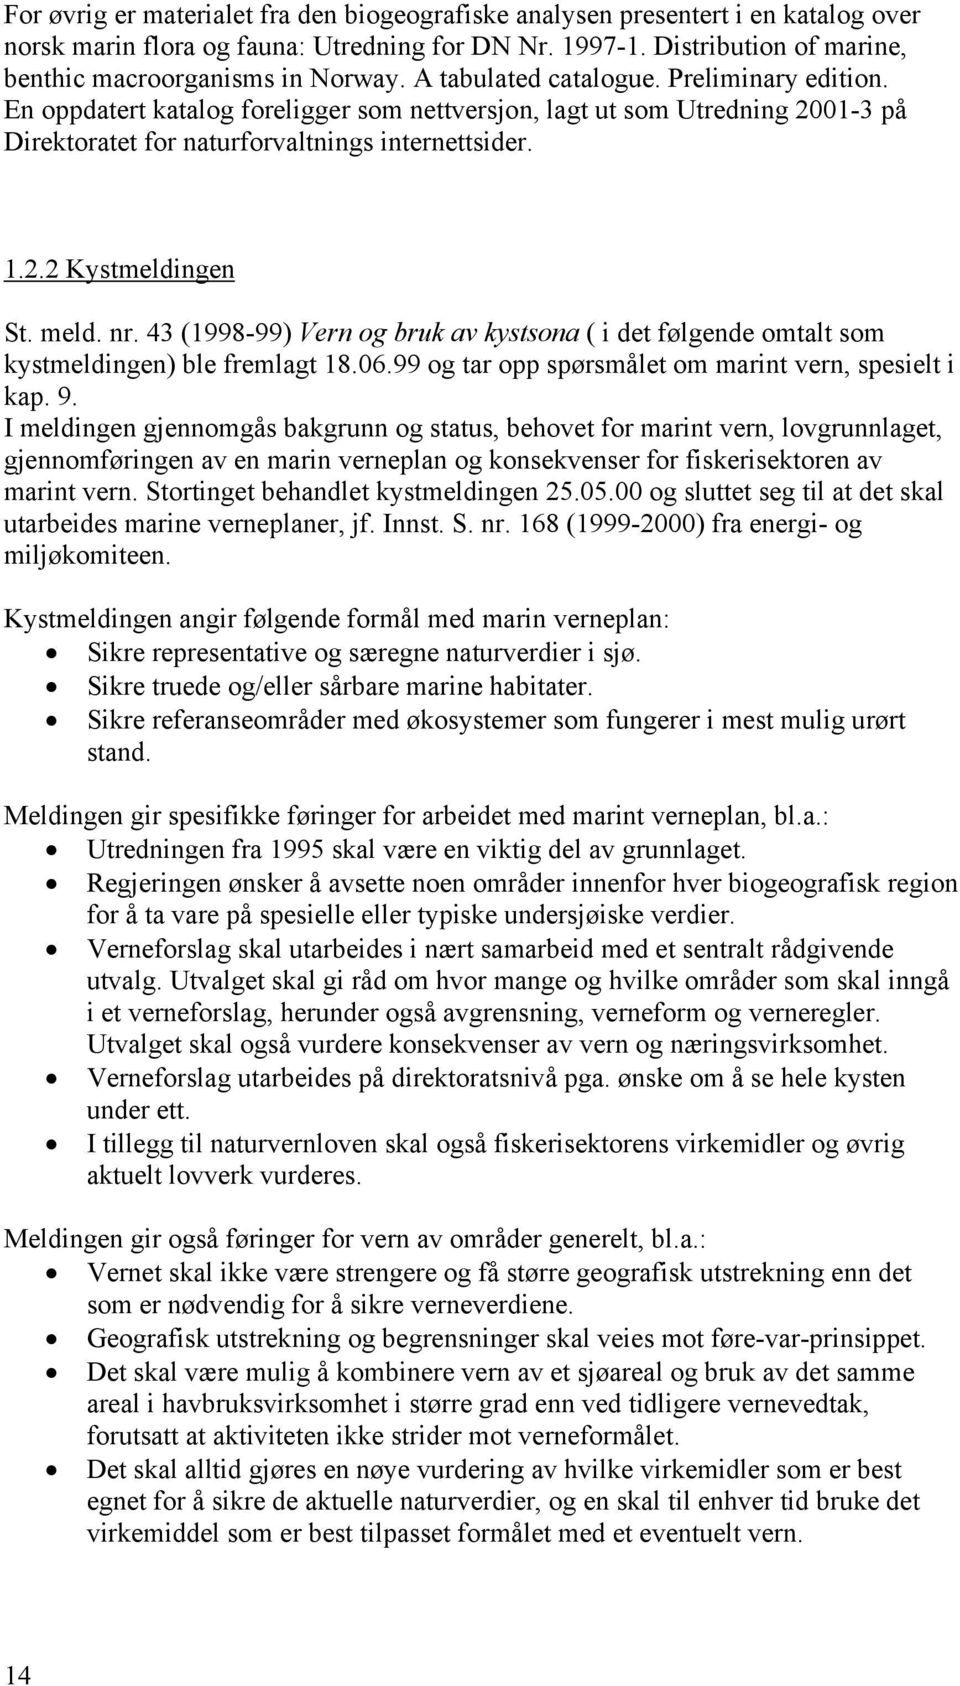 meld. nr. 43 (1998-99) Vern og bruk av kystsona ( i det følgende omtalt som kystmeldingen) ble fremlagt 18.06.99 og tar opp spørsmålet om marint vern, spesielt i kap. 9.